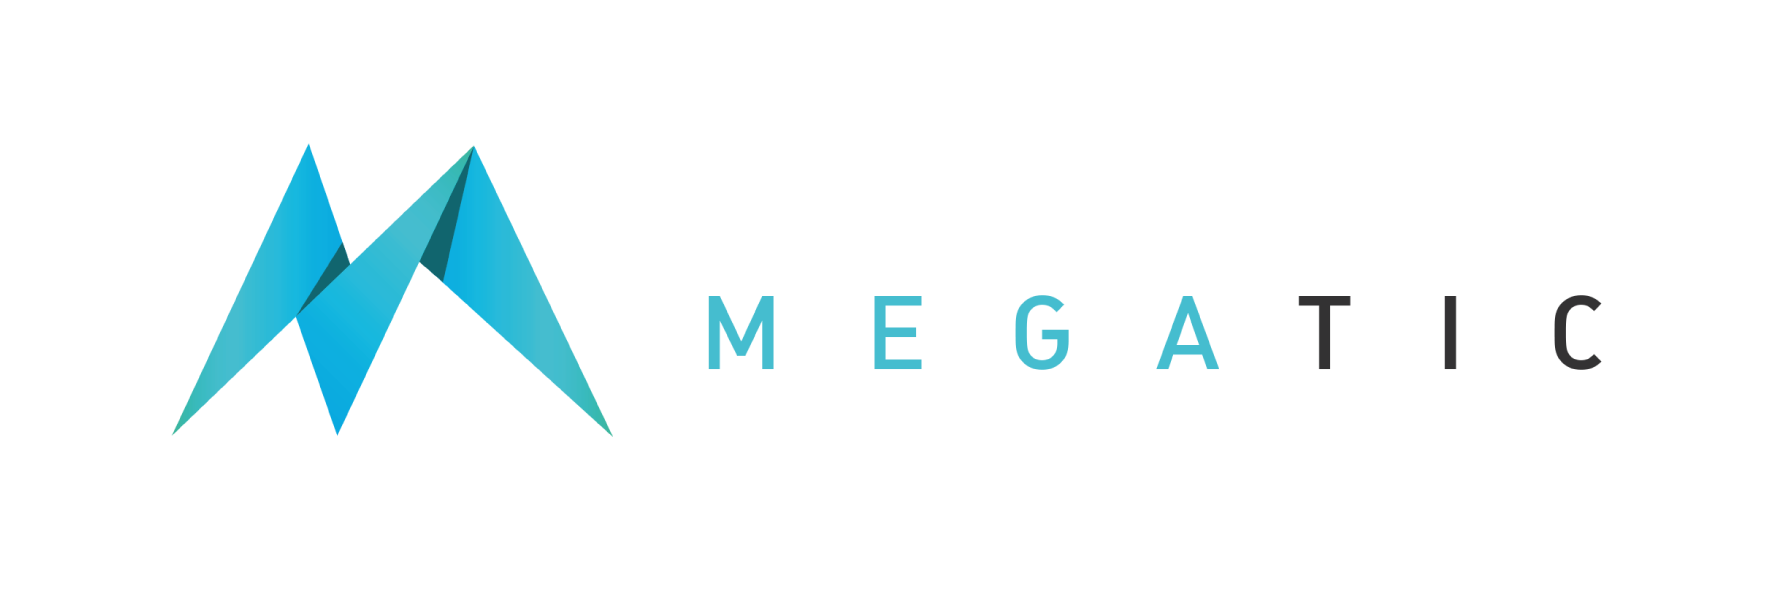 Megatic-02